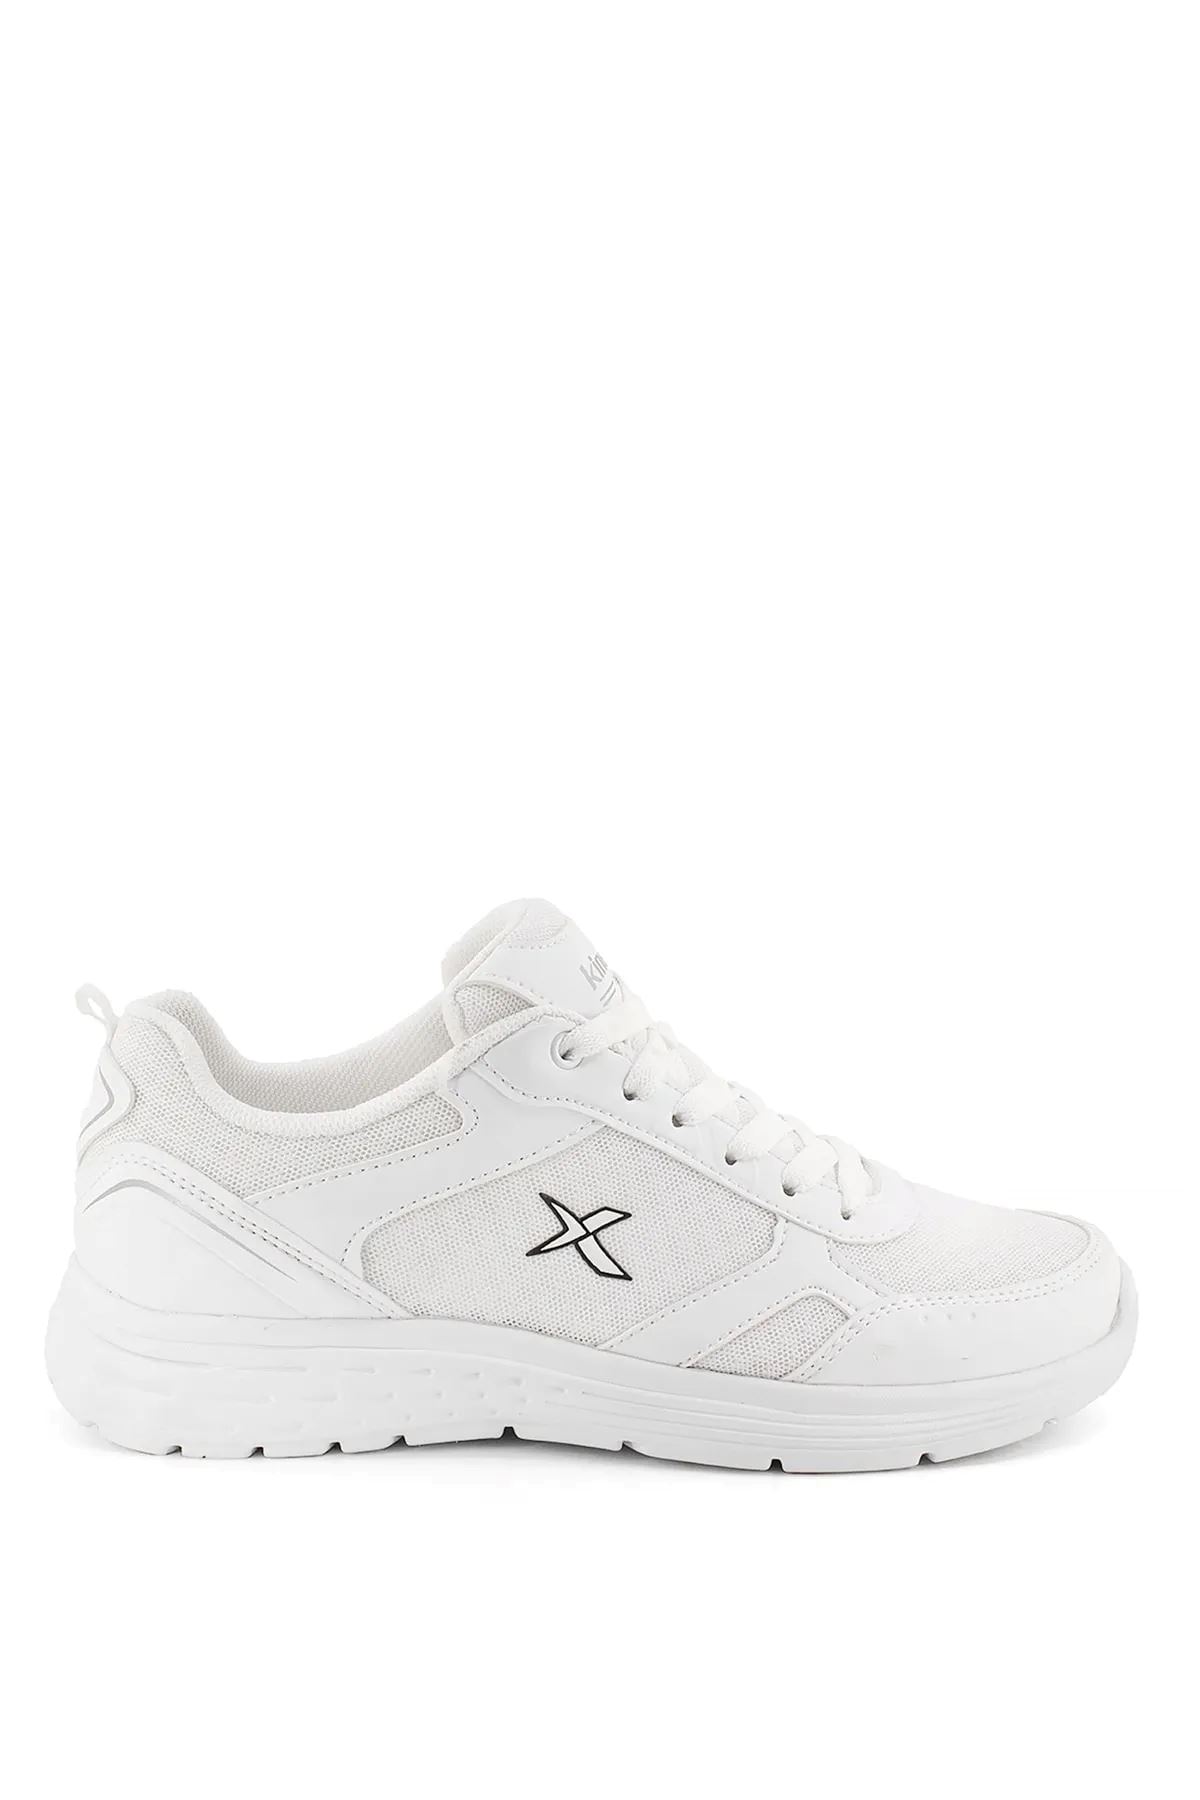 Apex Tx 3Fx Kinetix Kadın Beyaz Spor Ayakkabı - 101333718